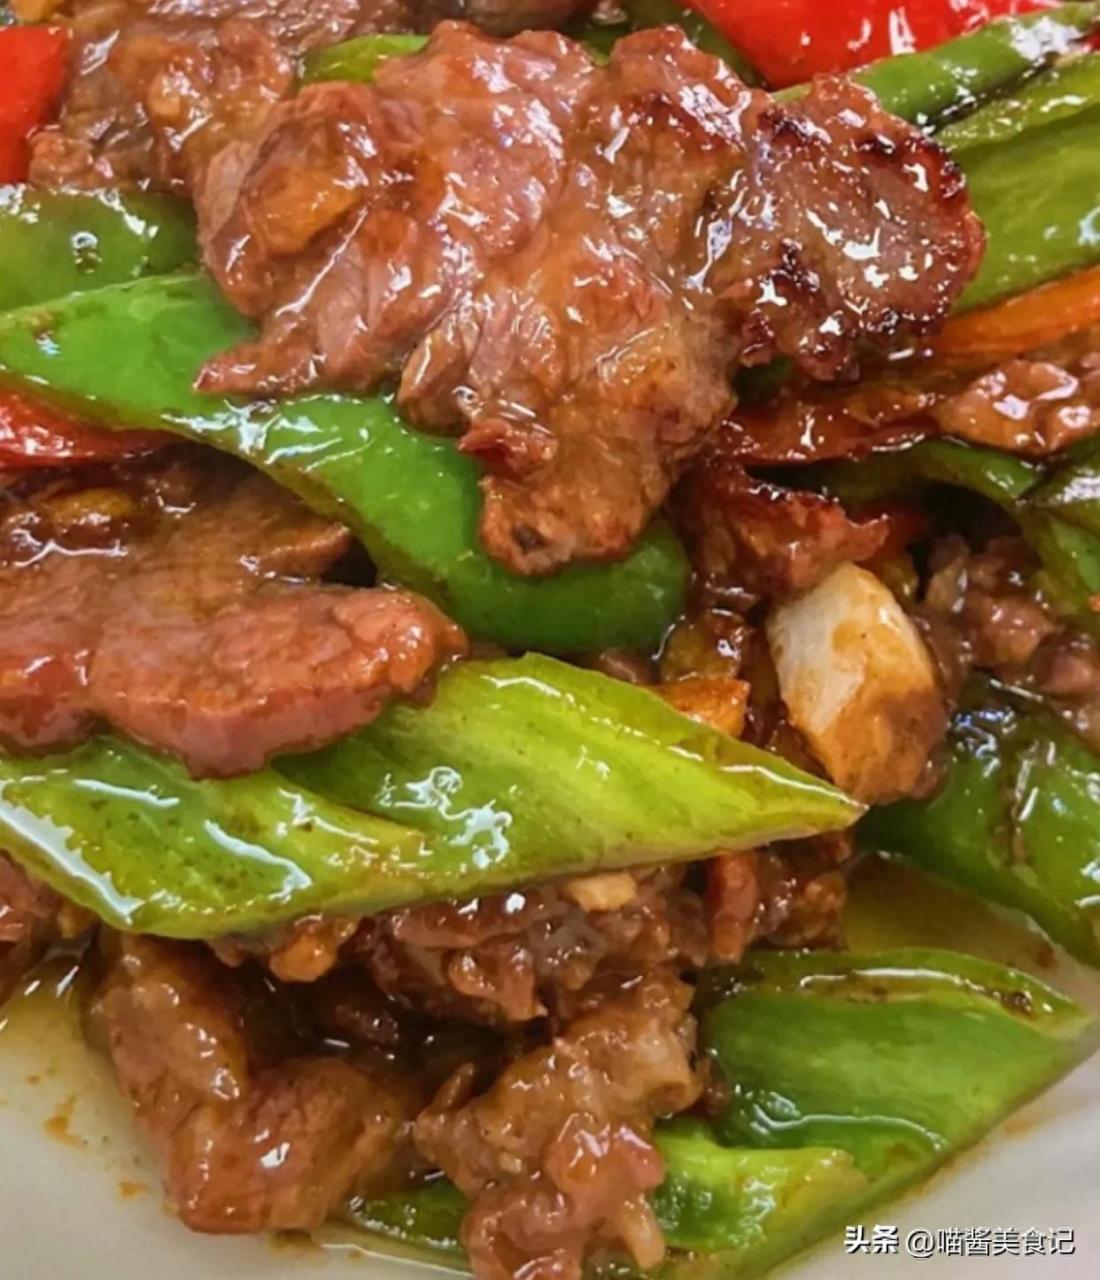 青椒炒牛肉的做法及腌制牛肉的详细步骤，口感鲜美营养丰富